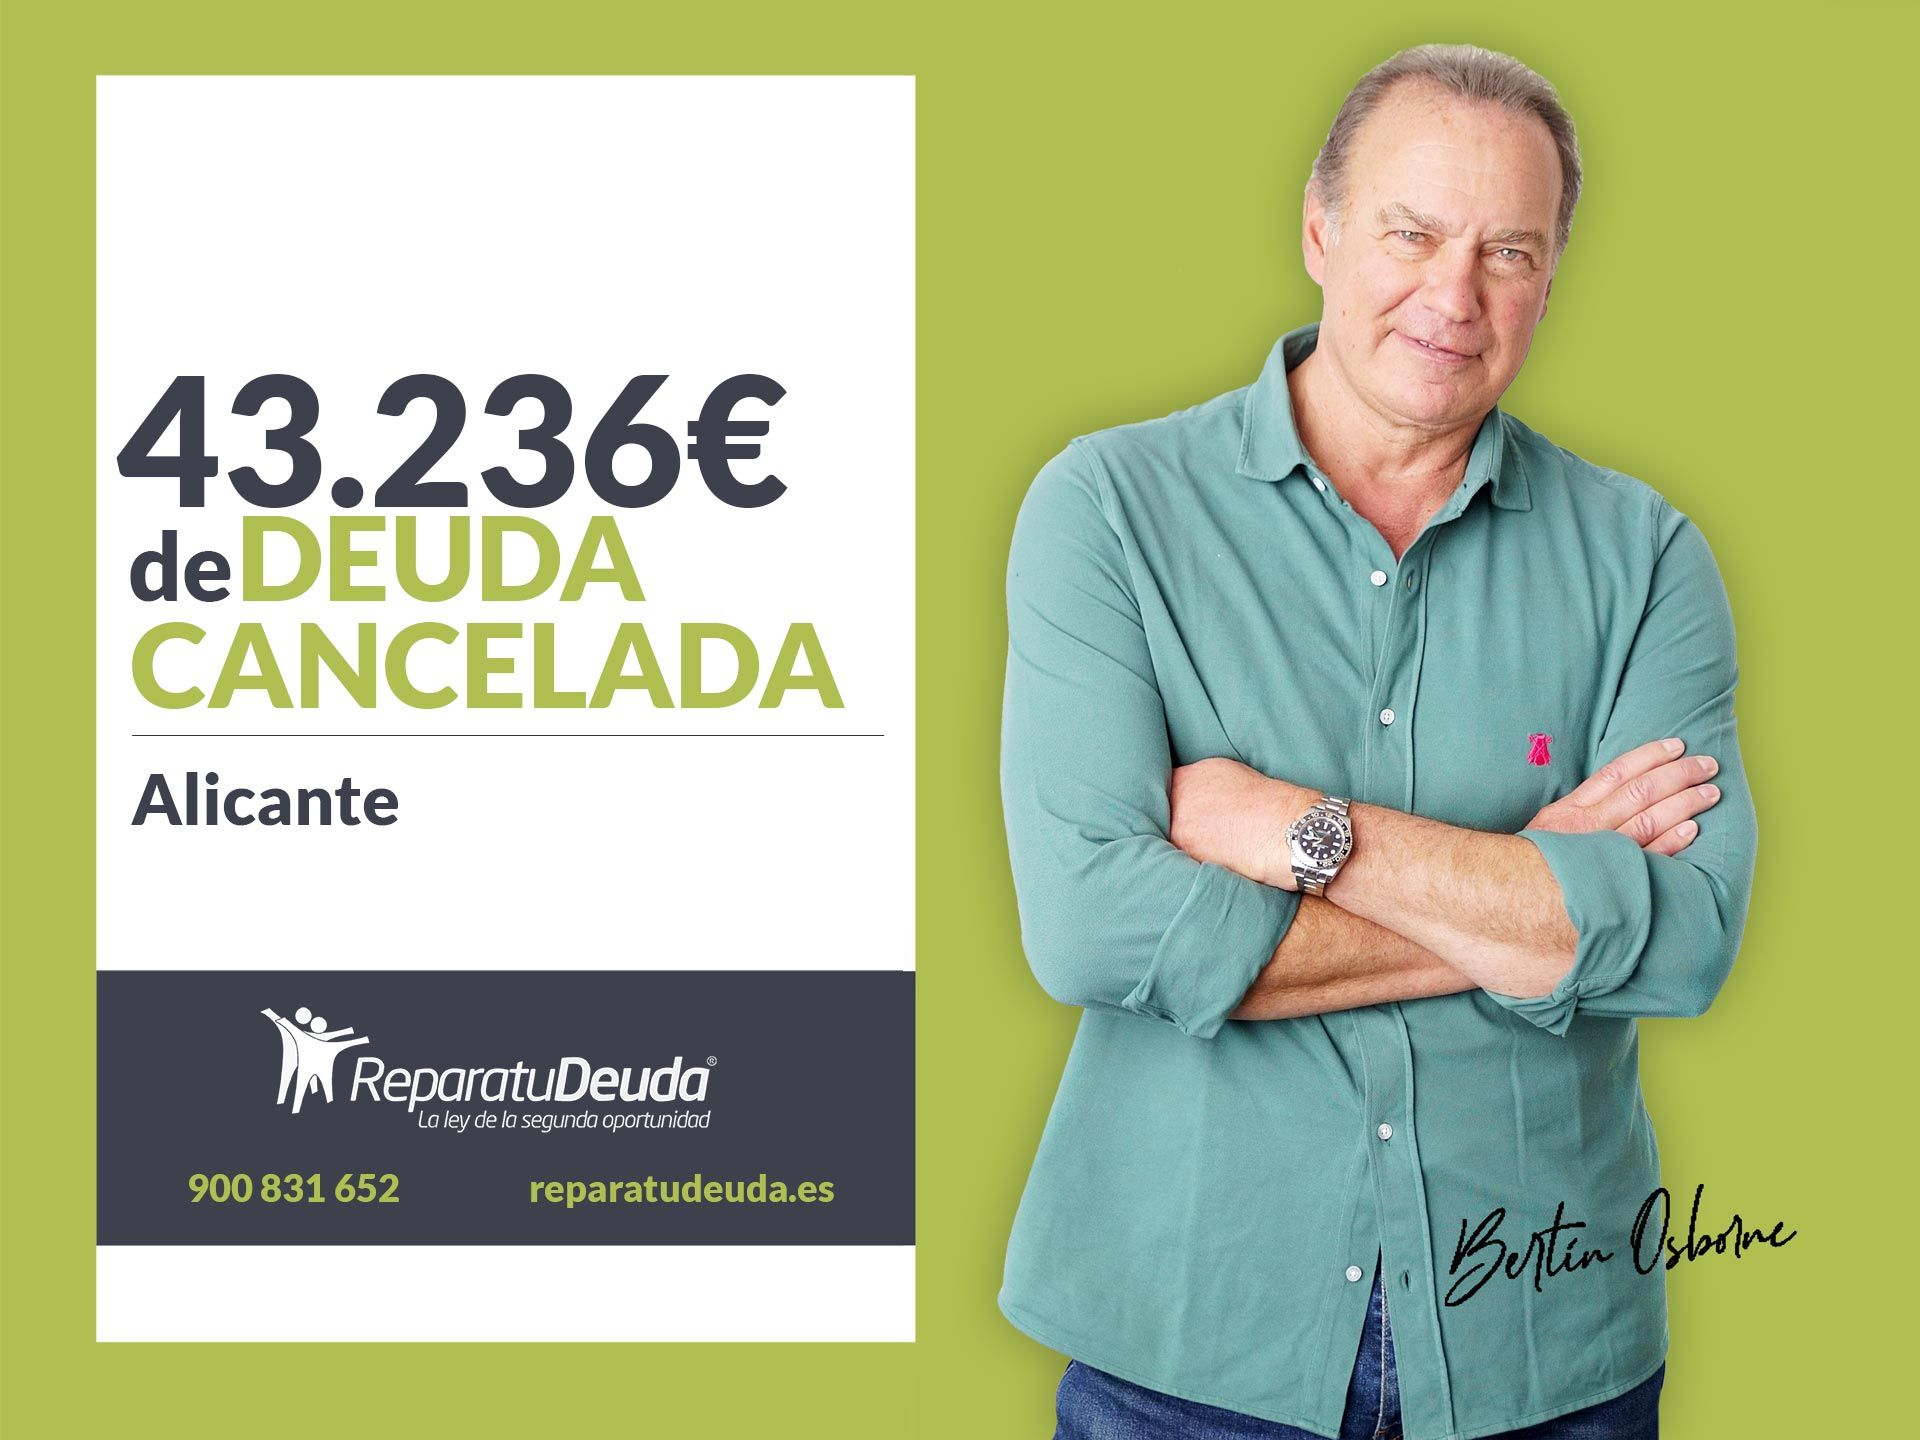 Repara tu Deuda cancela 43.236? en Alicante (Comunidad Valenciana) con la Ley de Segunda Oportunidad